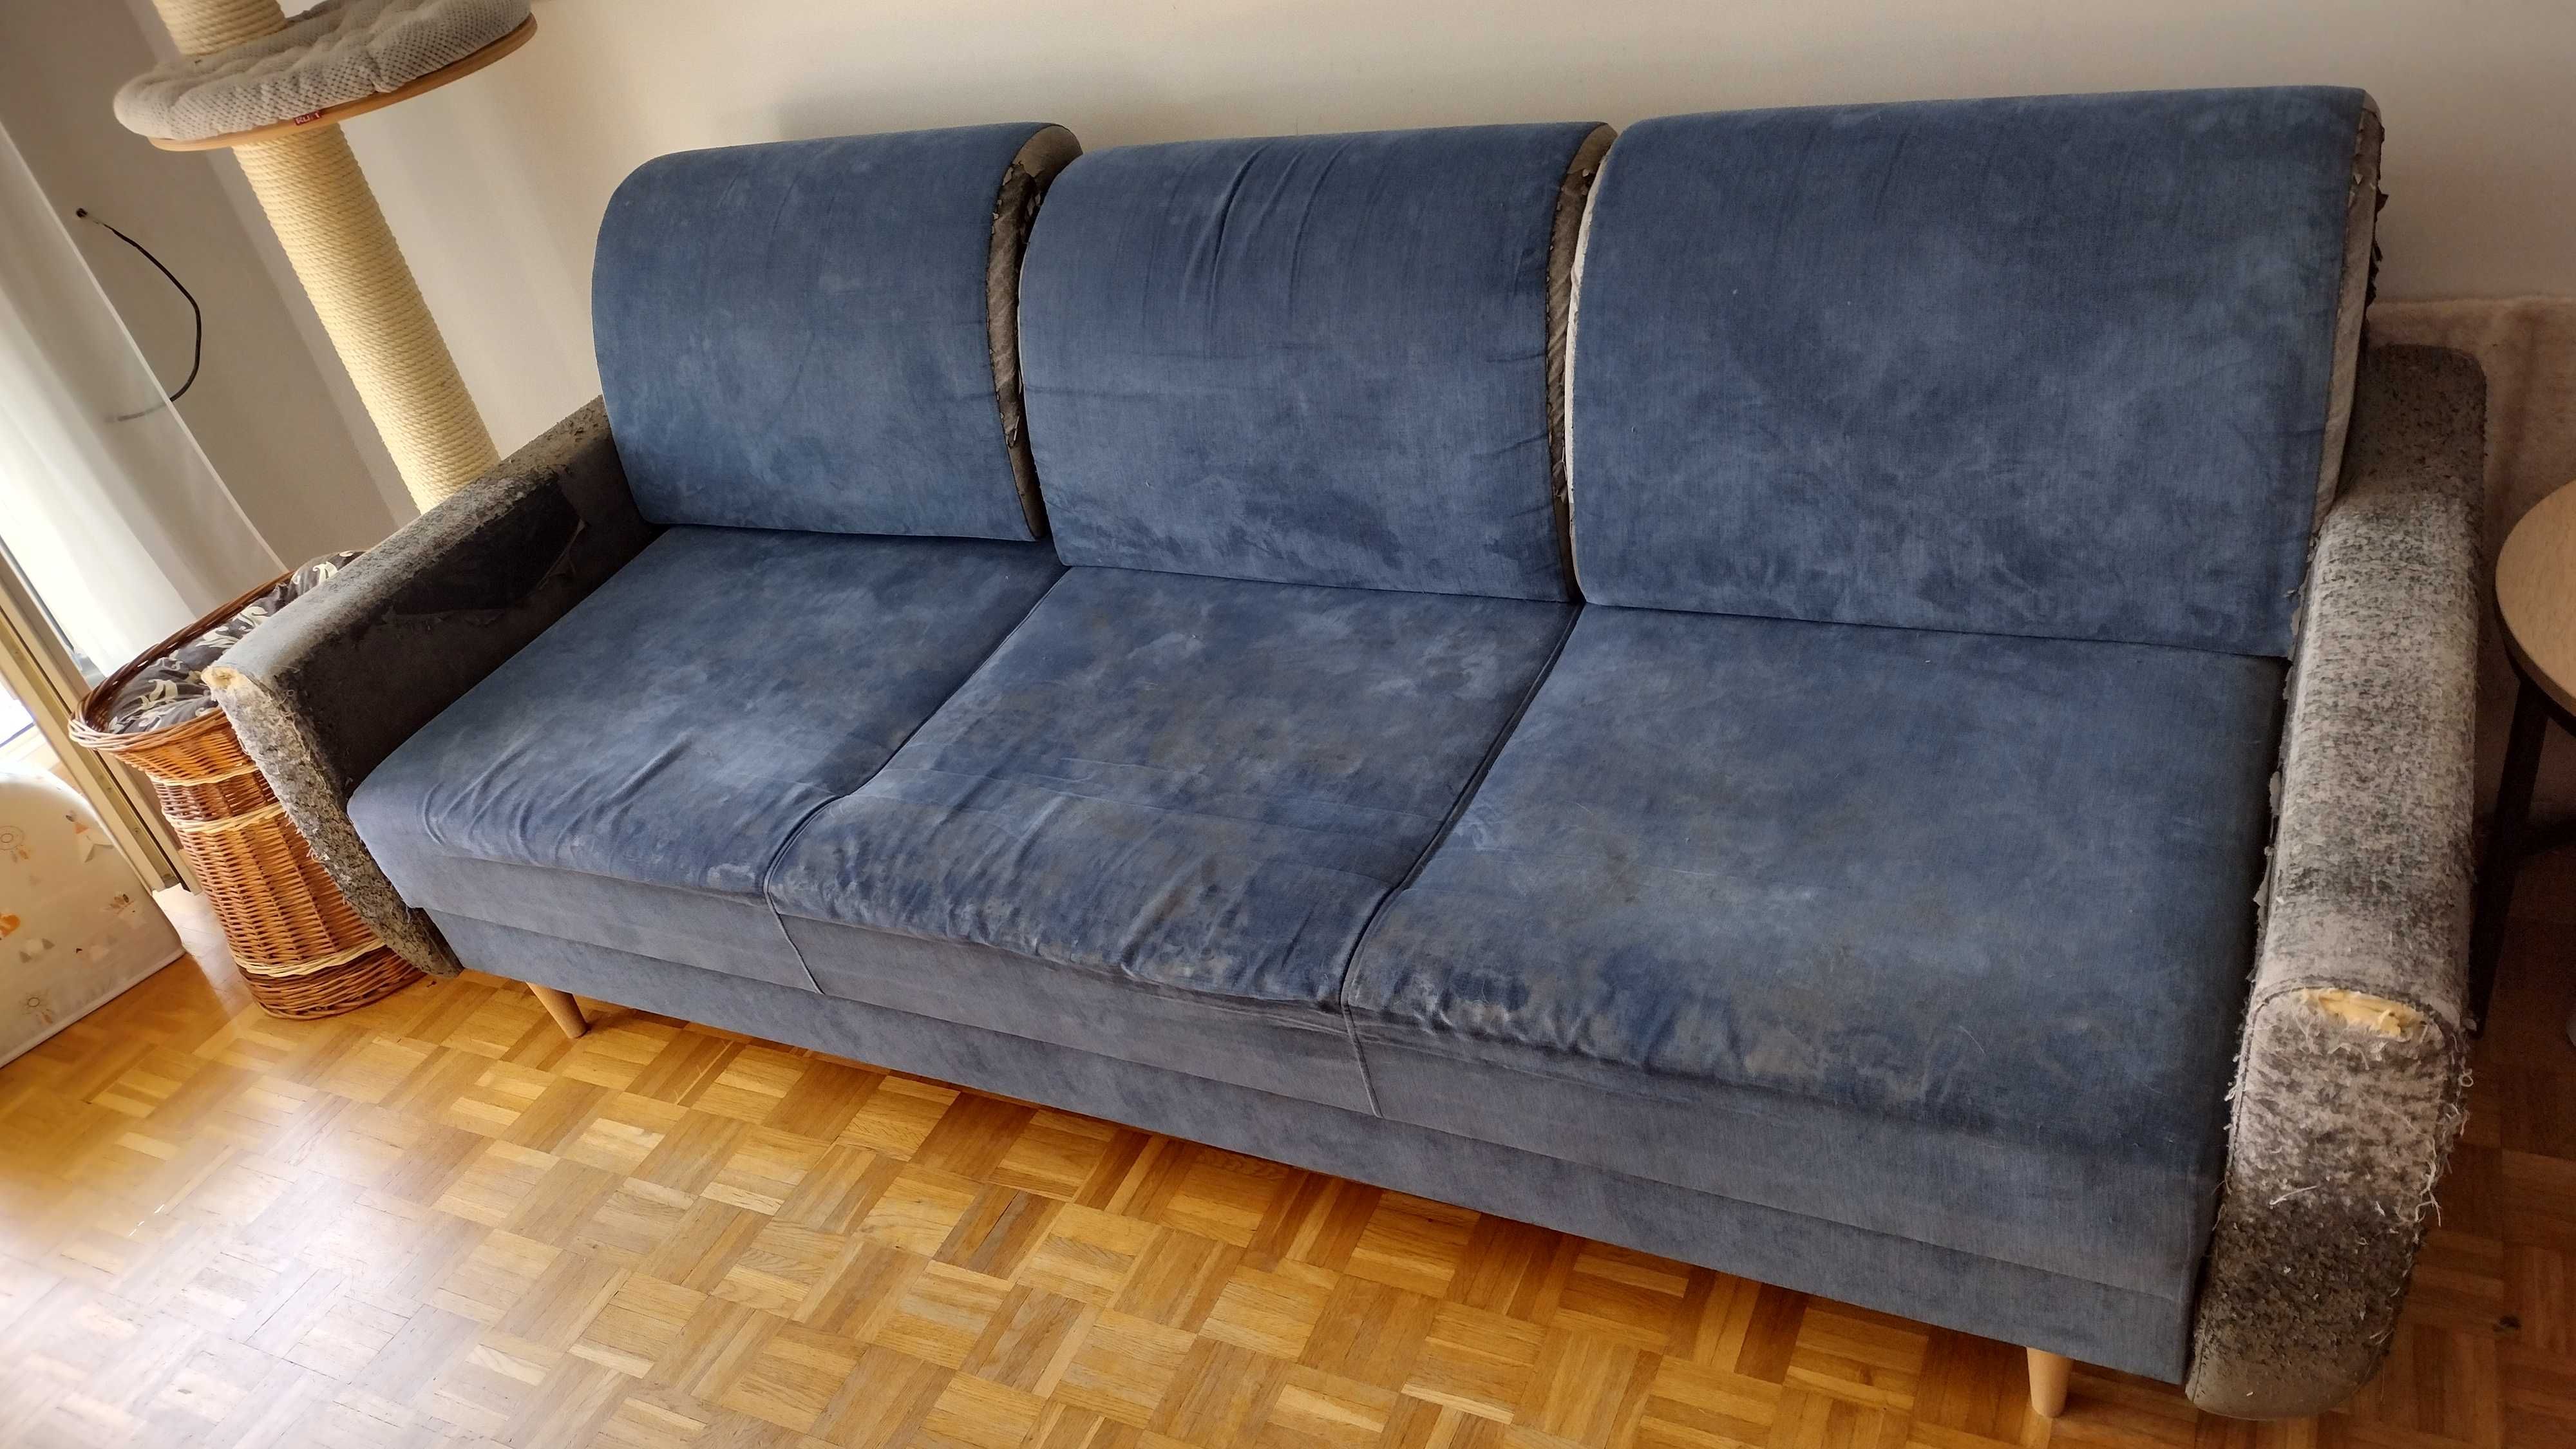 Sofa trzyosobowa z funkcją spania 225x100.  Do wyniesienia samemu.